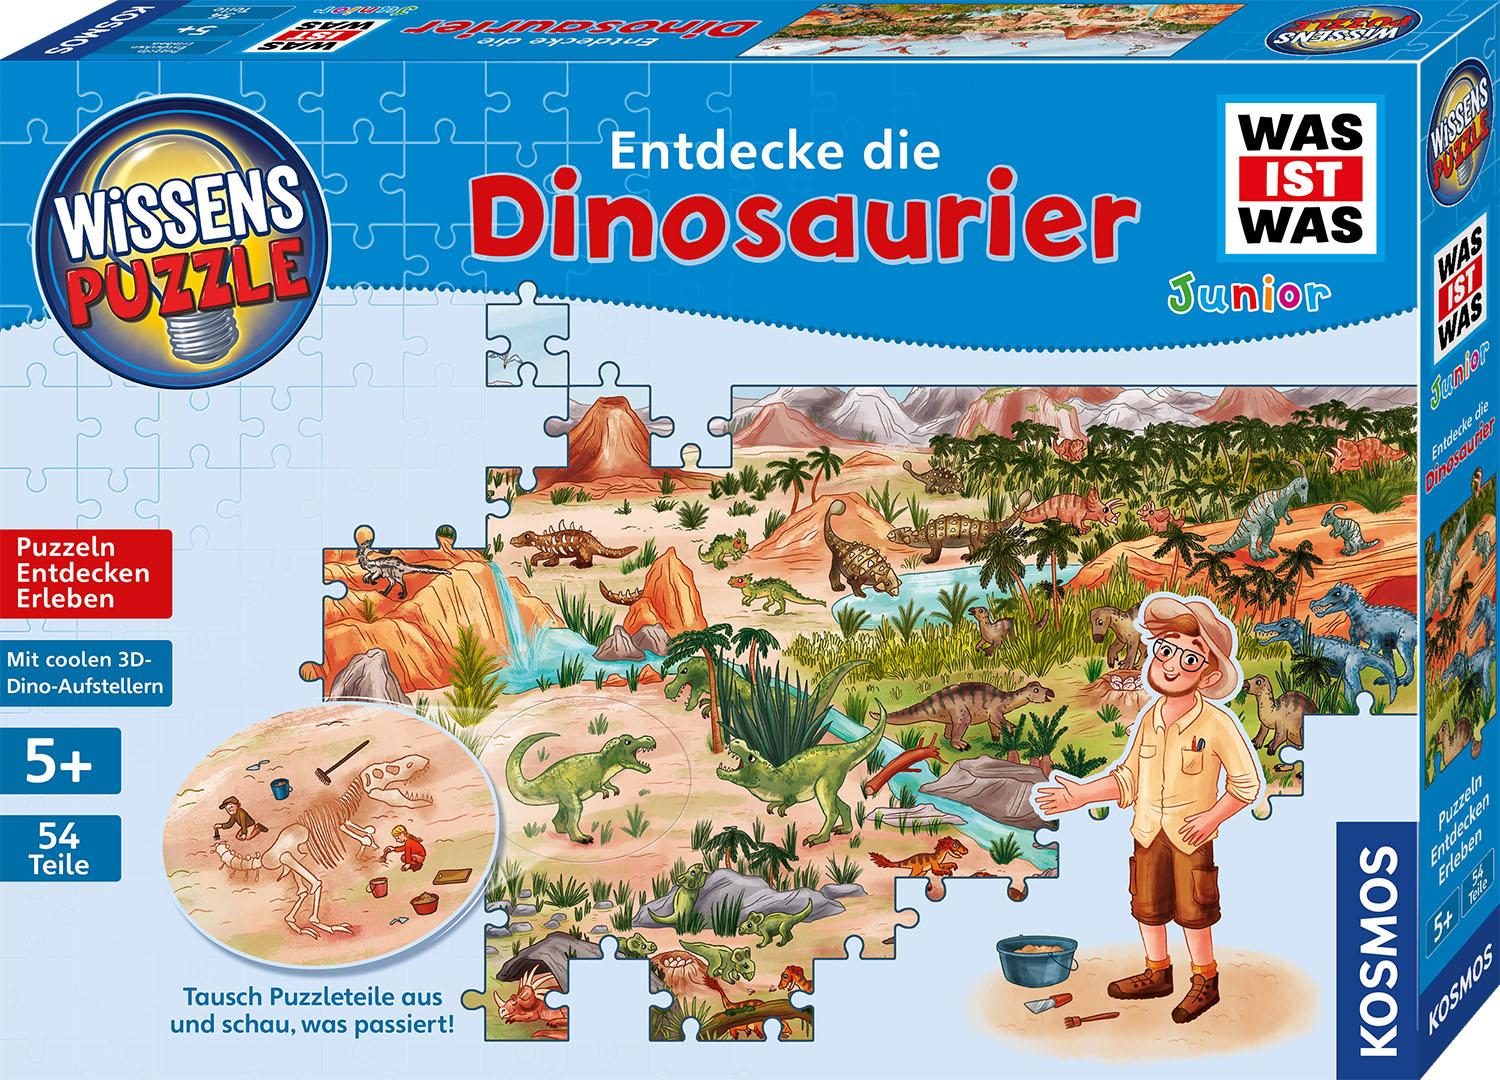 Was ist was Junior -  Wissens-Puzzle: Entdecke die Dinosaurier - 54 Teile